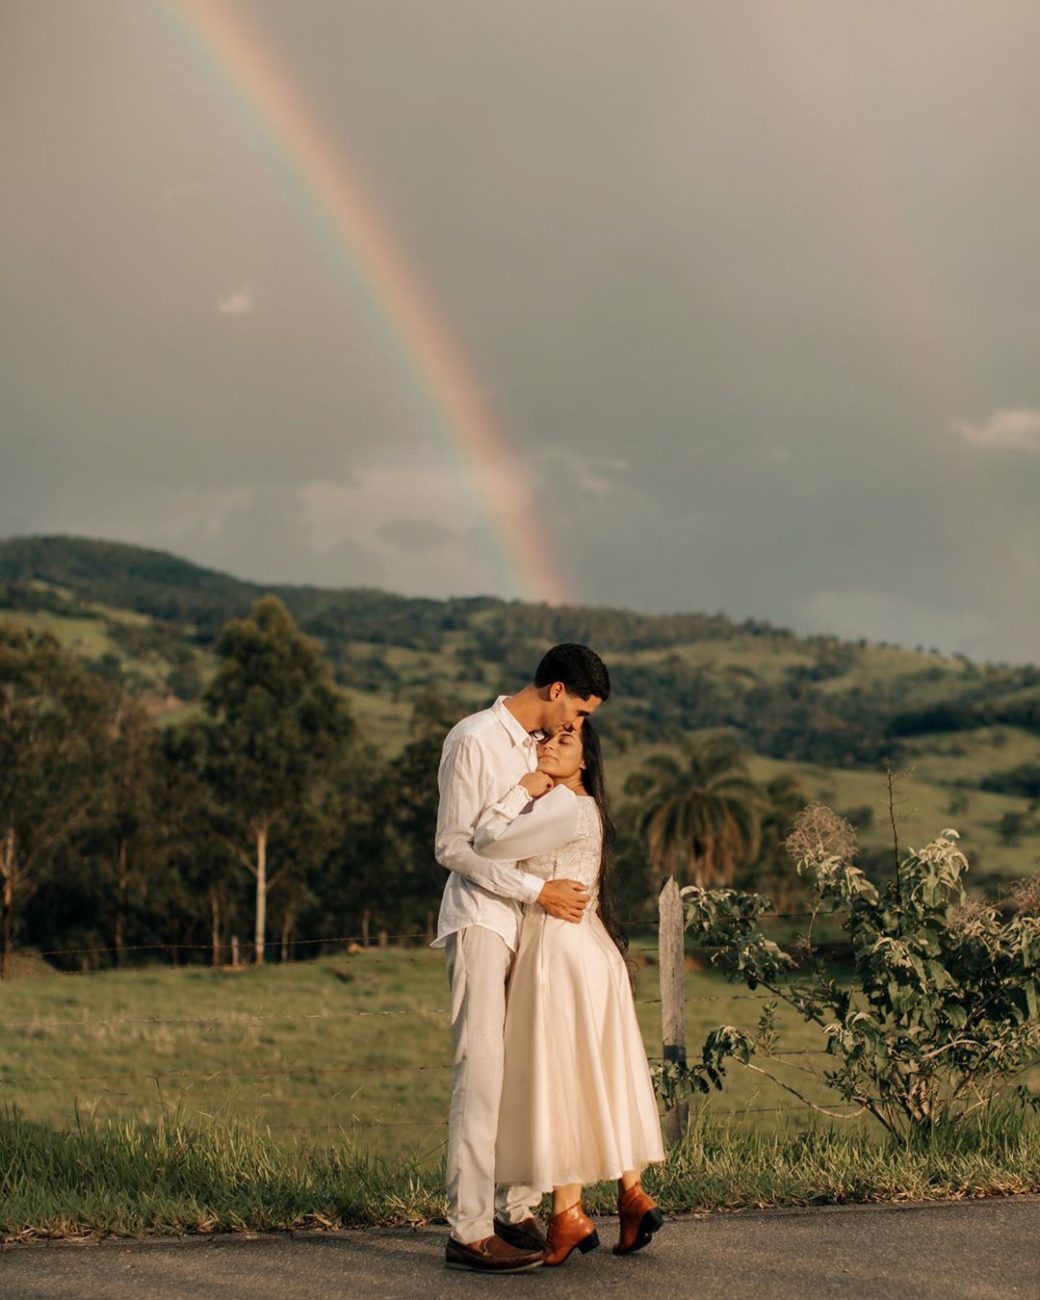 Casal em pose romântica com arco-íris ao fundo, ambos de branco, ilustrando um possível look pré-wedding